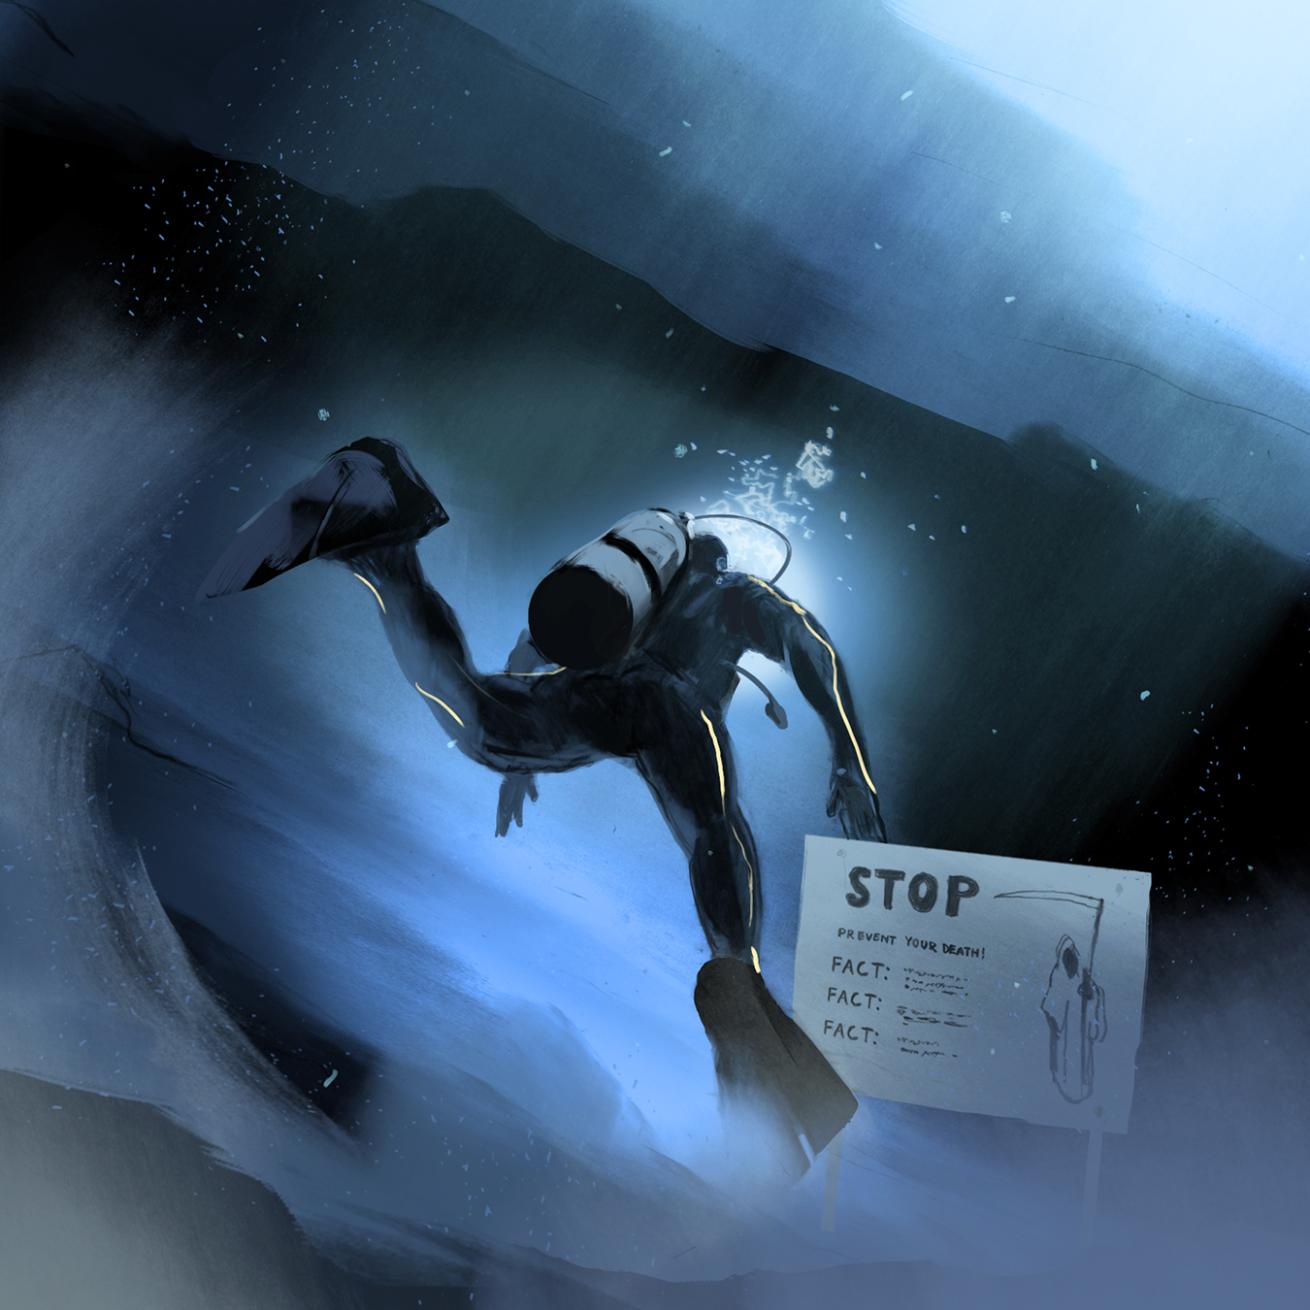 A Diver Loses His Life After Exploring a Cave